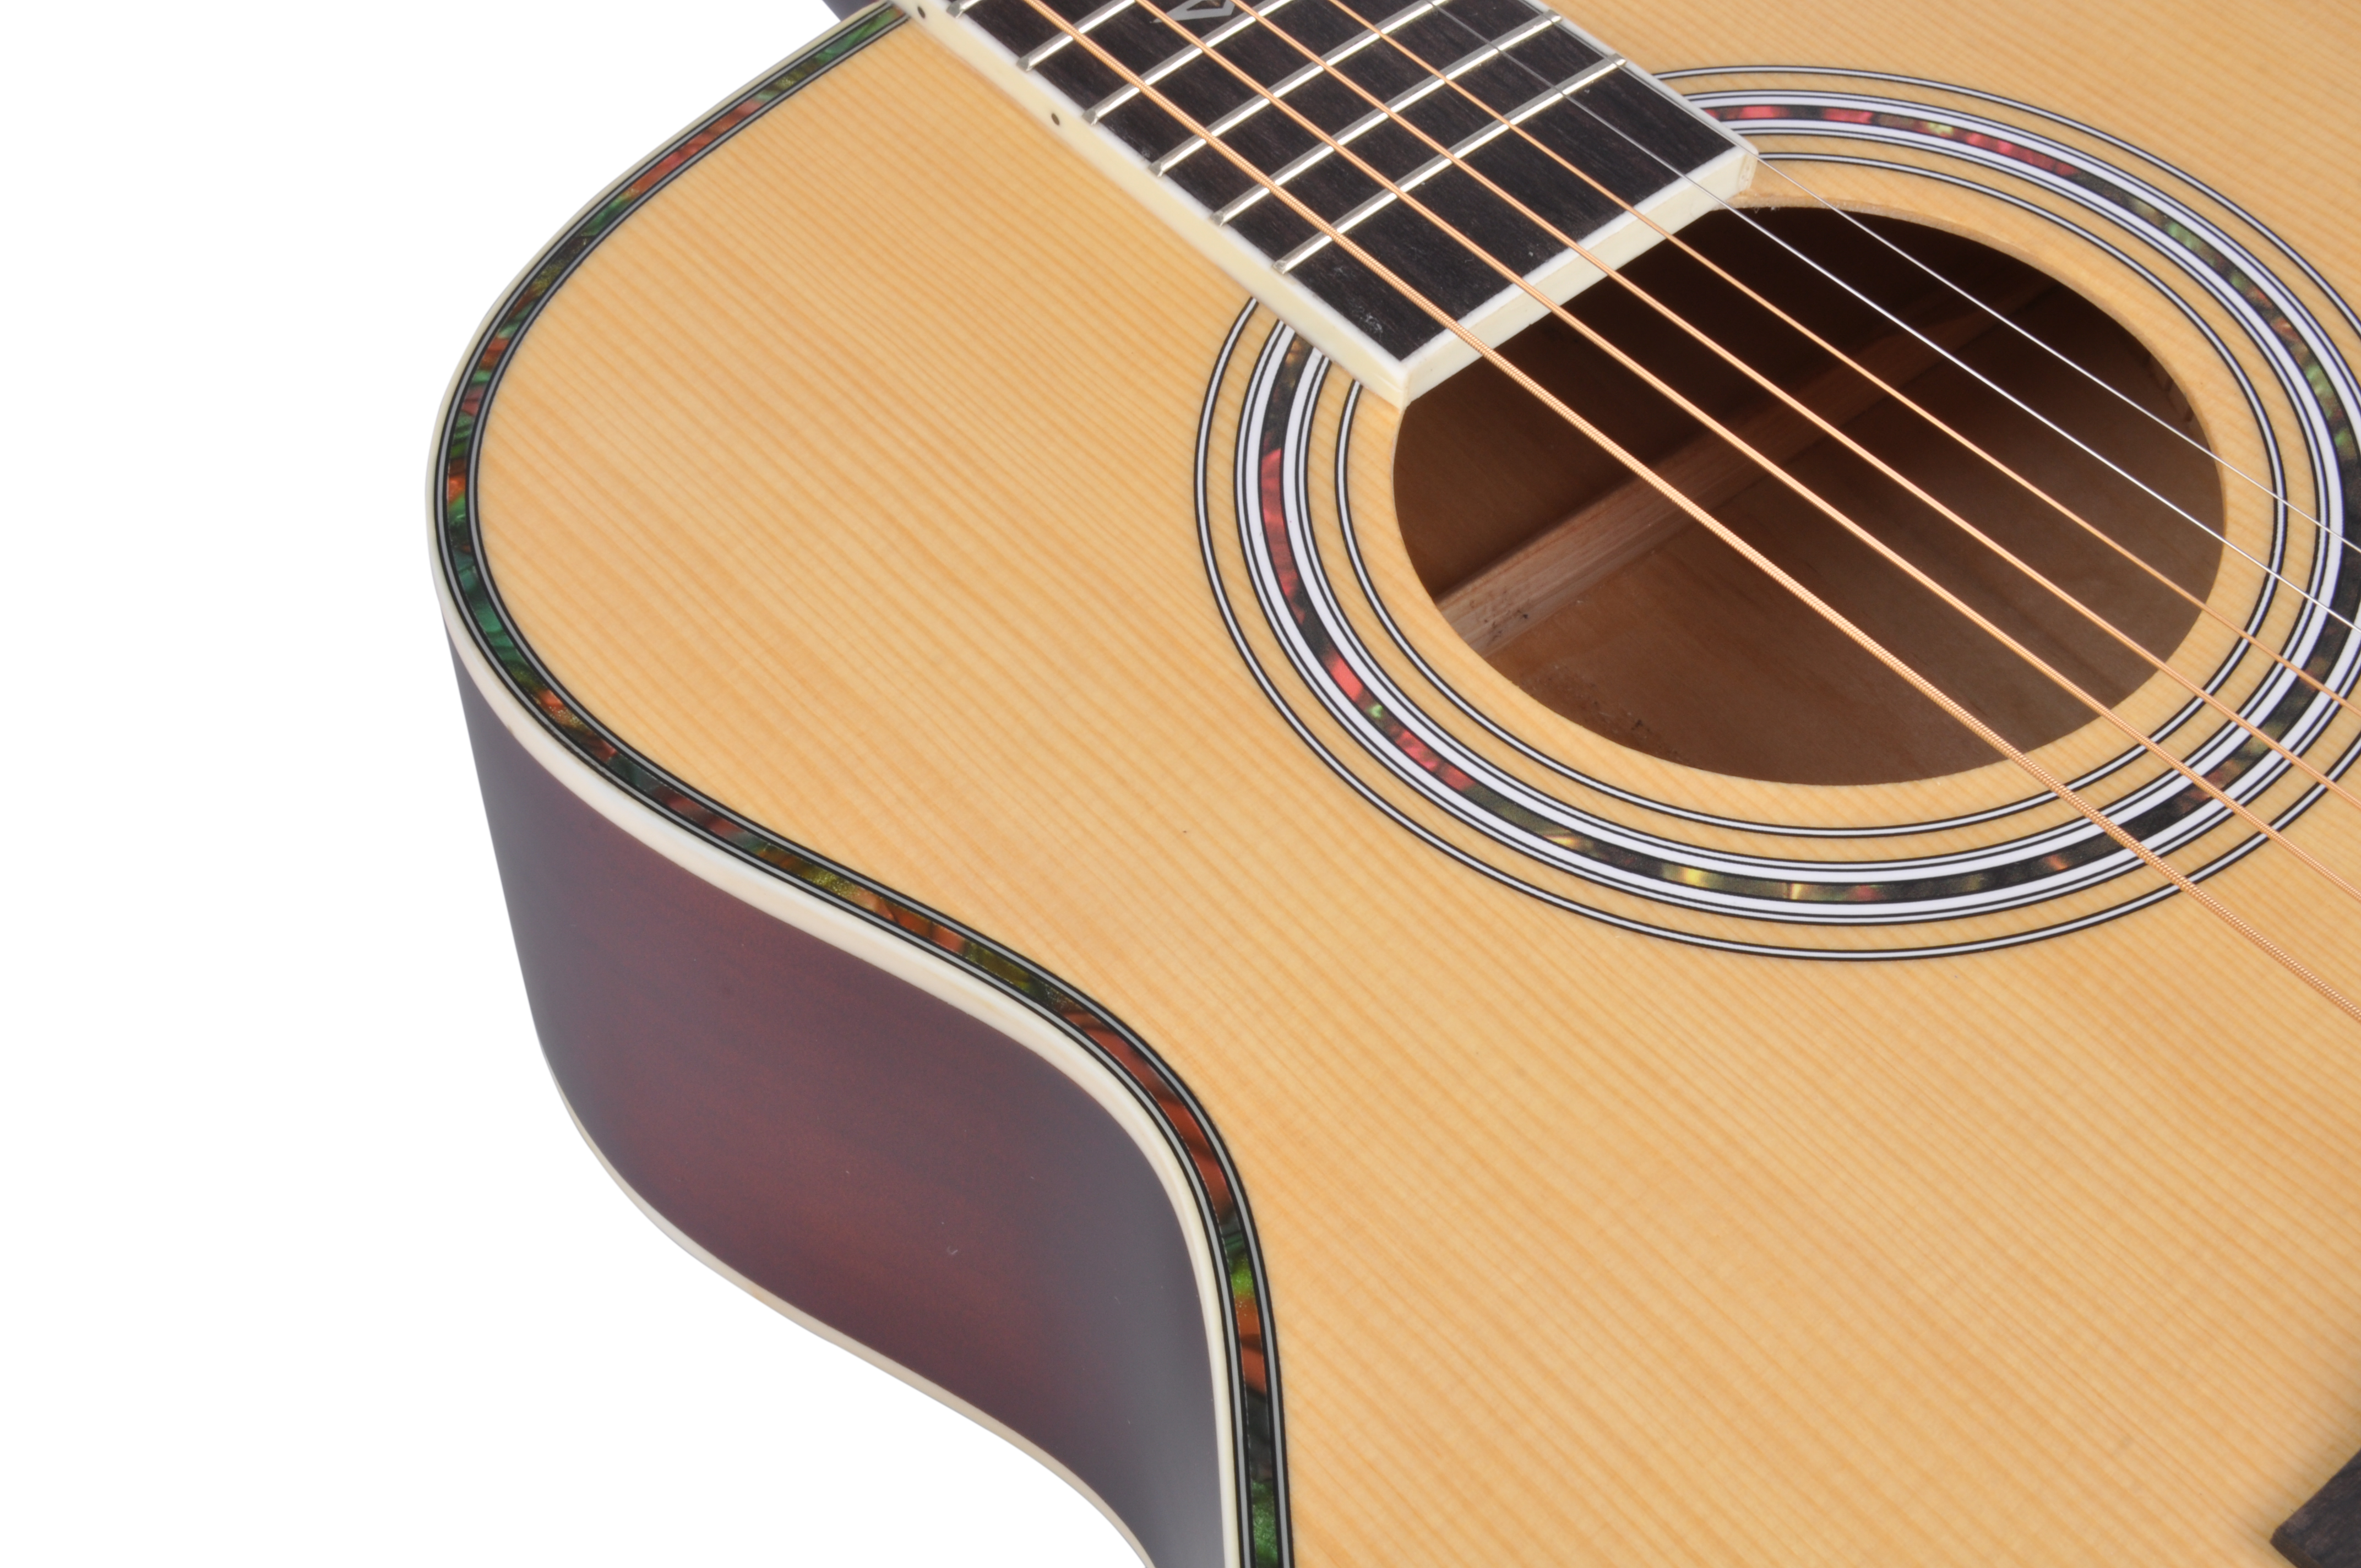 Guitarra acústica para estudiantes de la serie Winzz de cuerpo redondo de 36 pulgadas (AF168W-36)